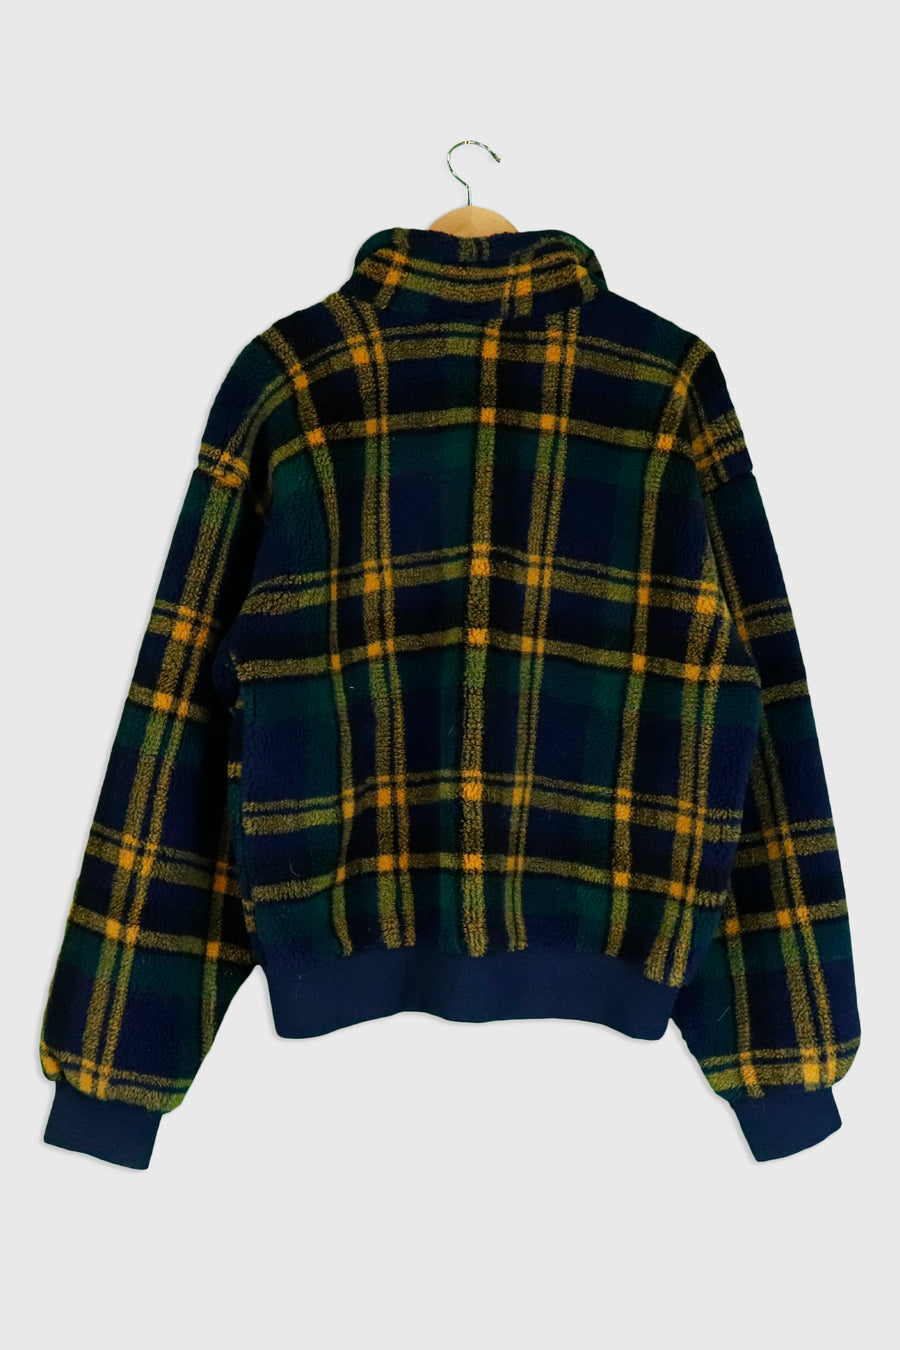 Vintage Fleece Flannel Pattern Full Zip Sweatshirt Sz M